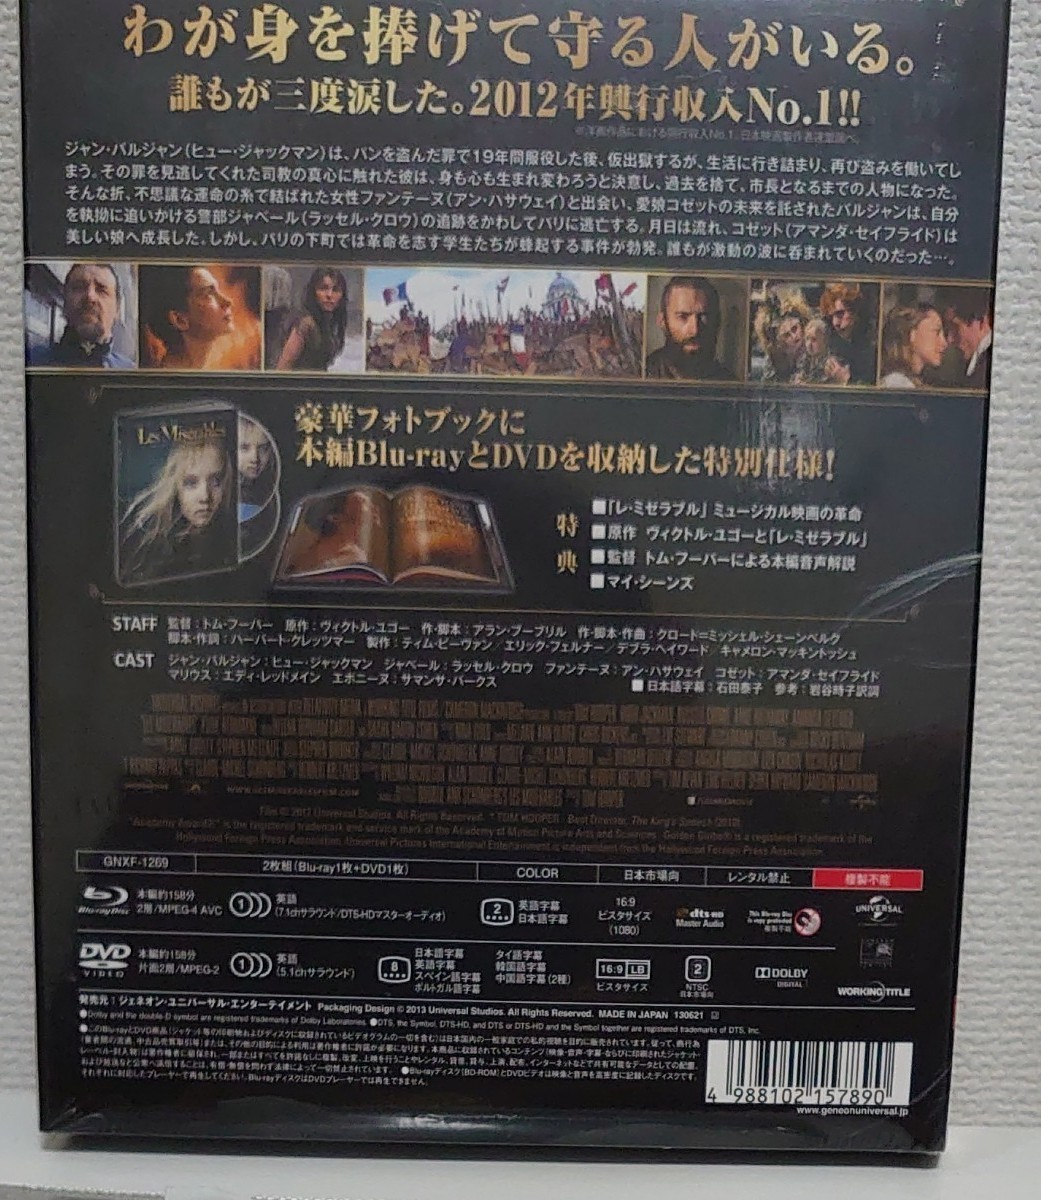 レミゼラブル 〈フォトブック仕様ブルーレイ&DVD〉 [Blu-ray] 